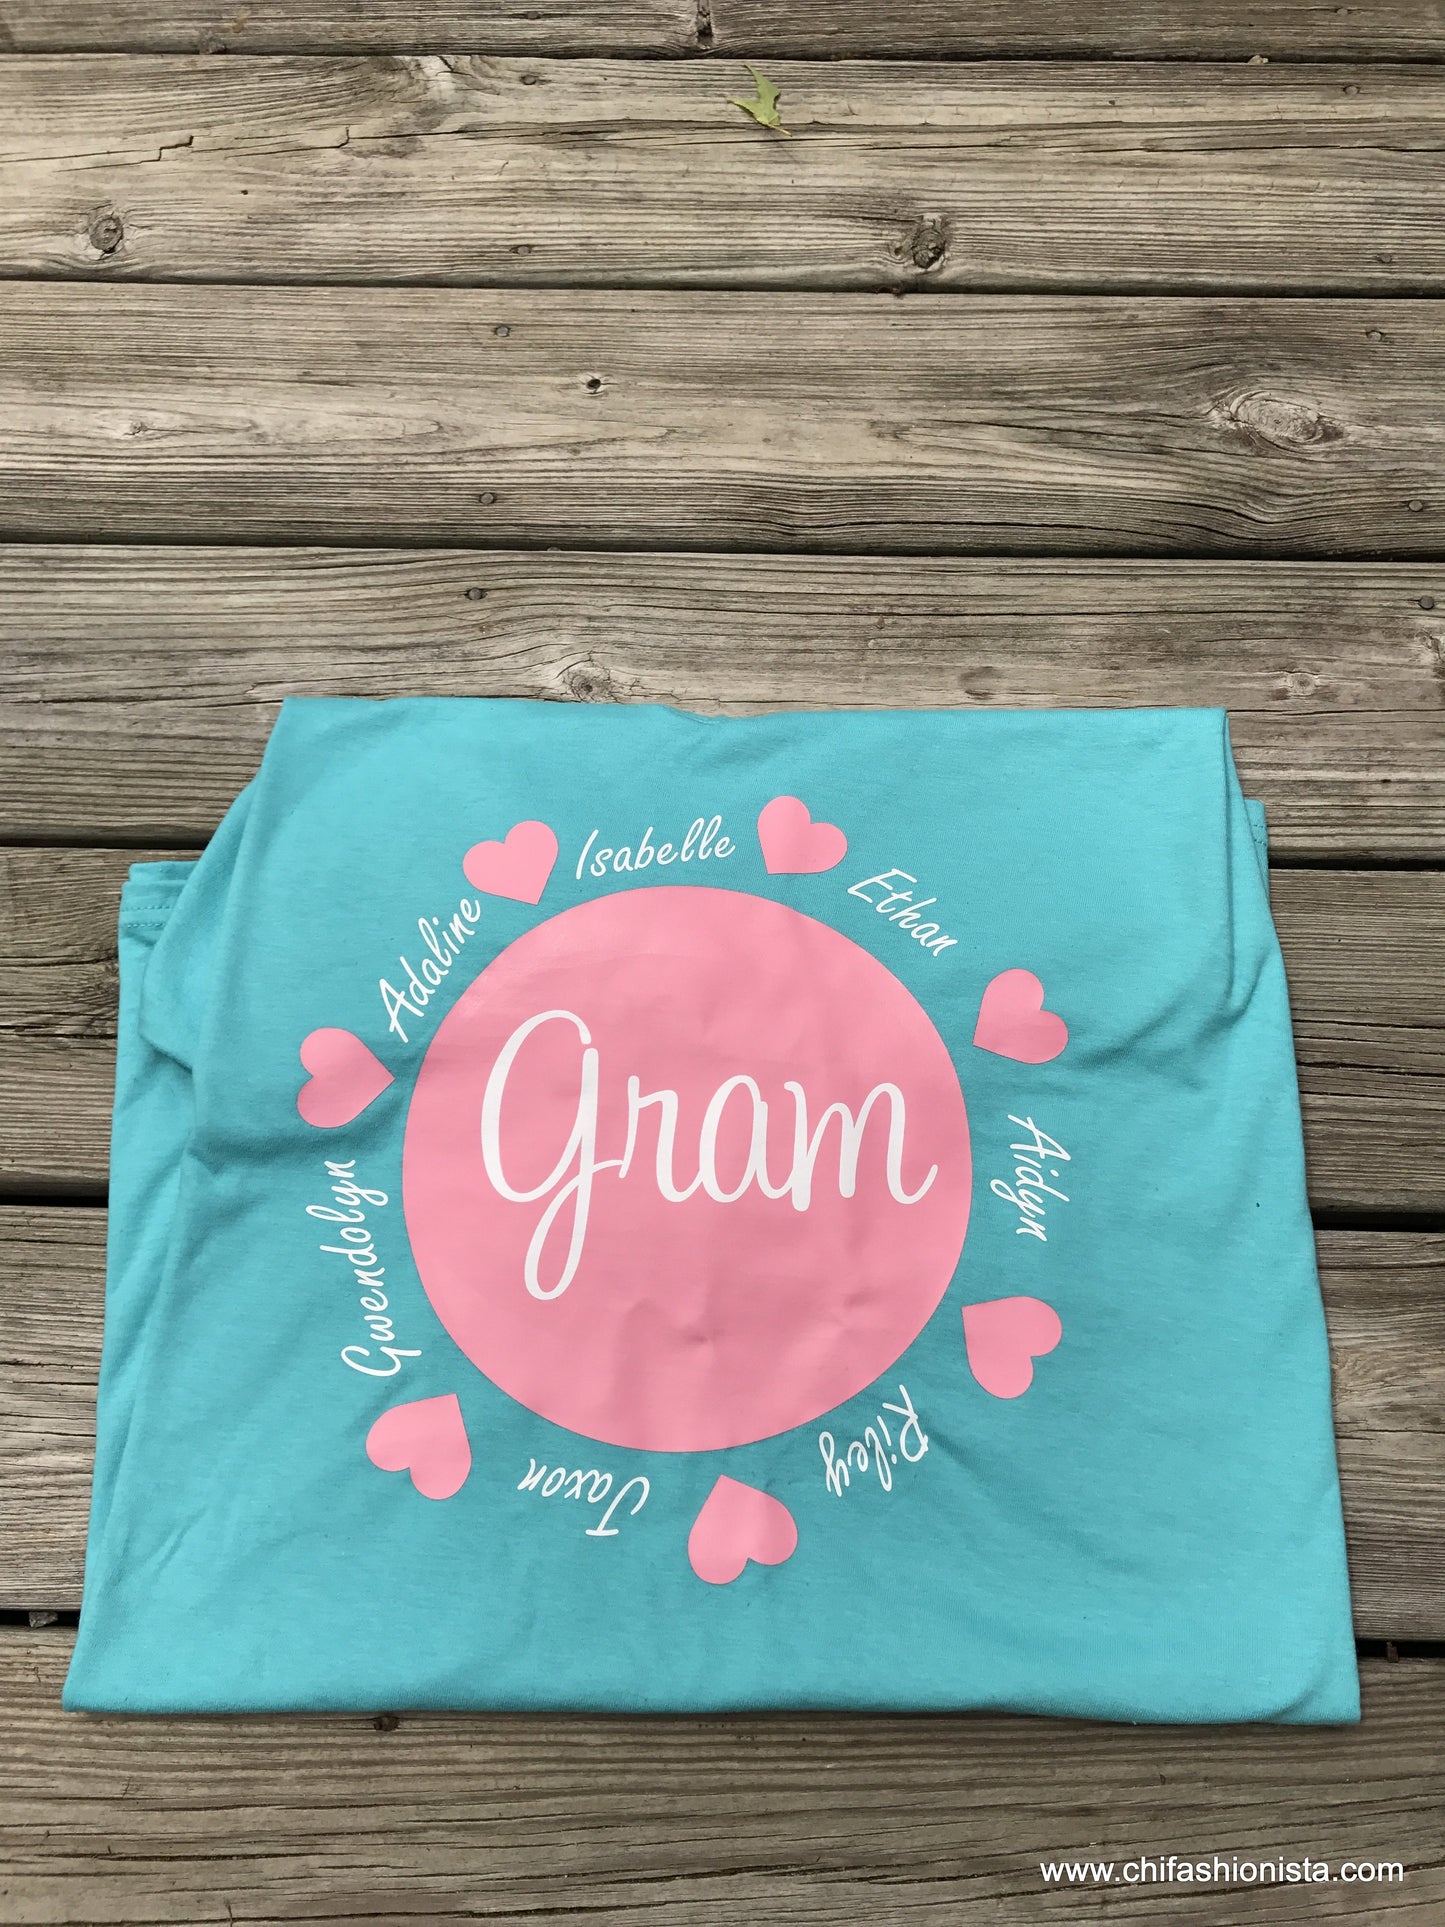 Gram with Grandchildren's names